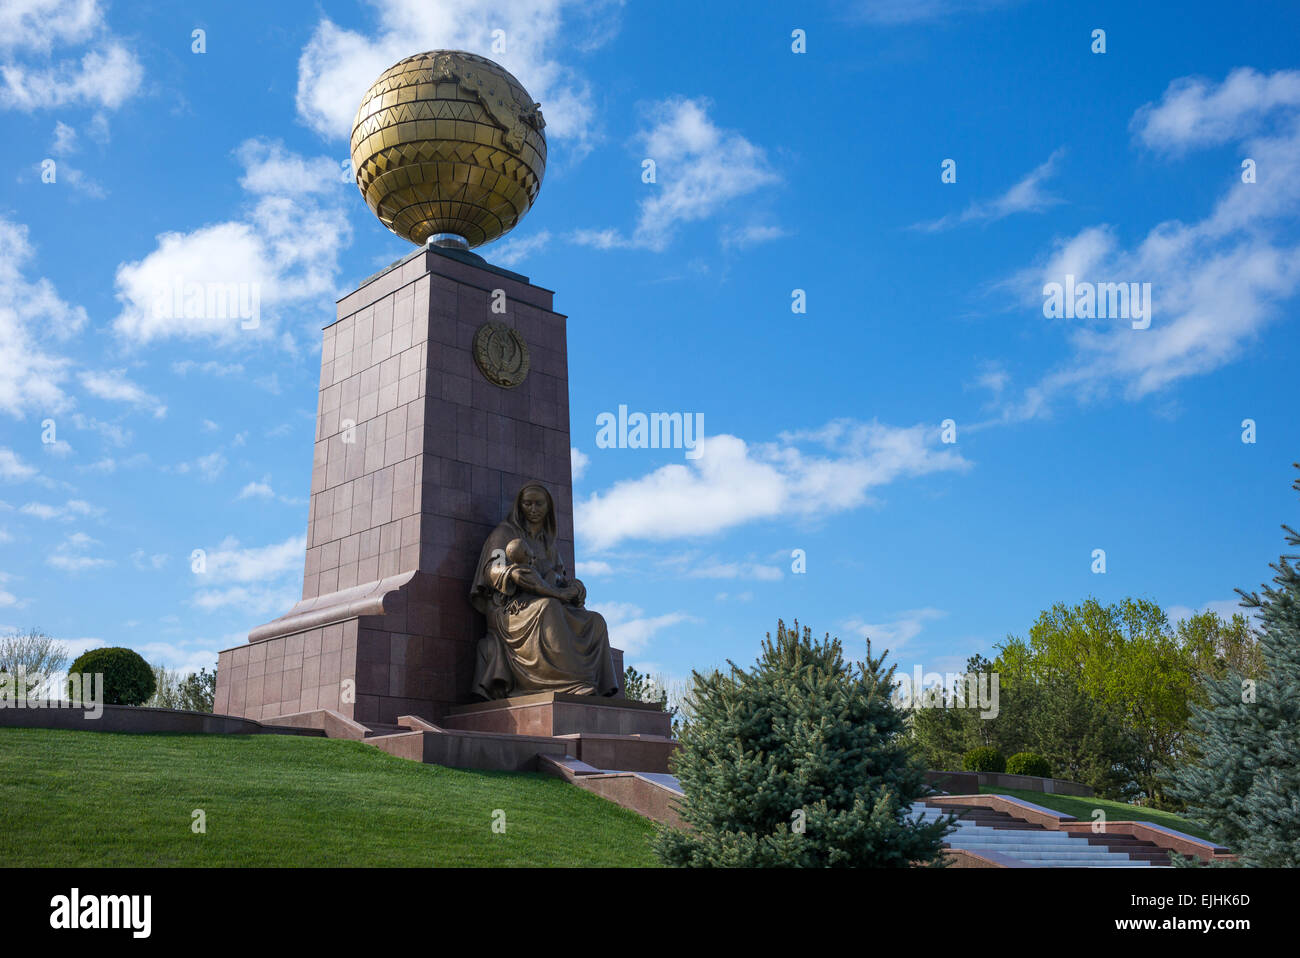 L'Ouzbékistan, Tachkent, Ouzbékistan la mère monument symbolique Banque D'Images